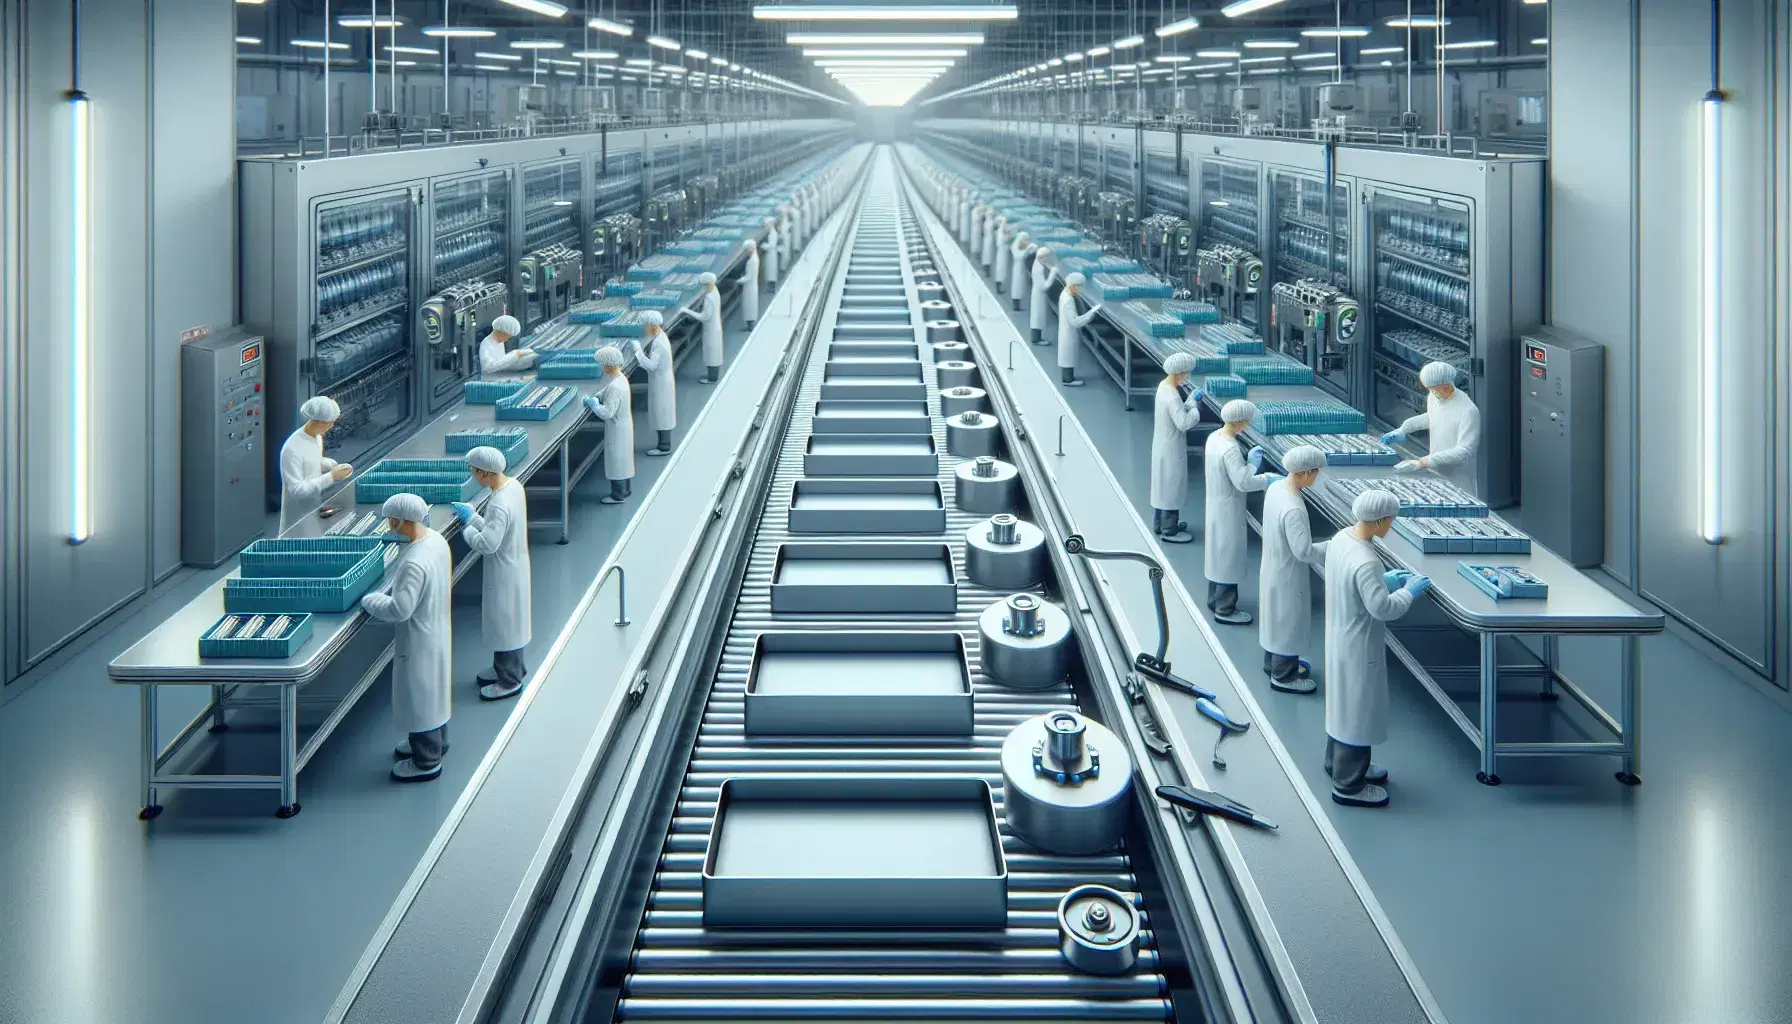 Línea de ensamblaje moderna en fábrica con trabajadores en batas blancas ajustando productos en serie sobre cinta transportadora.